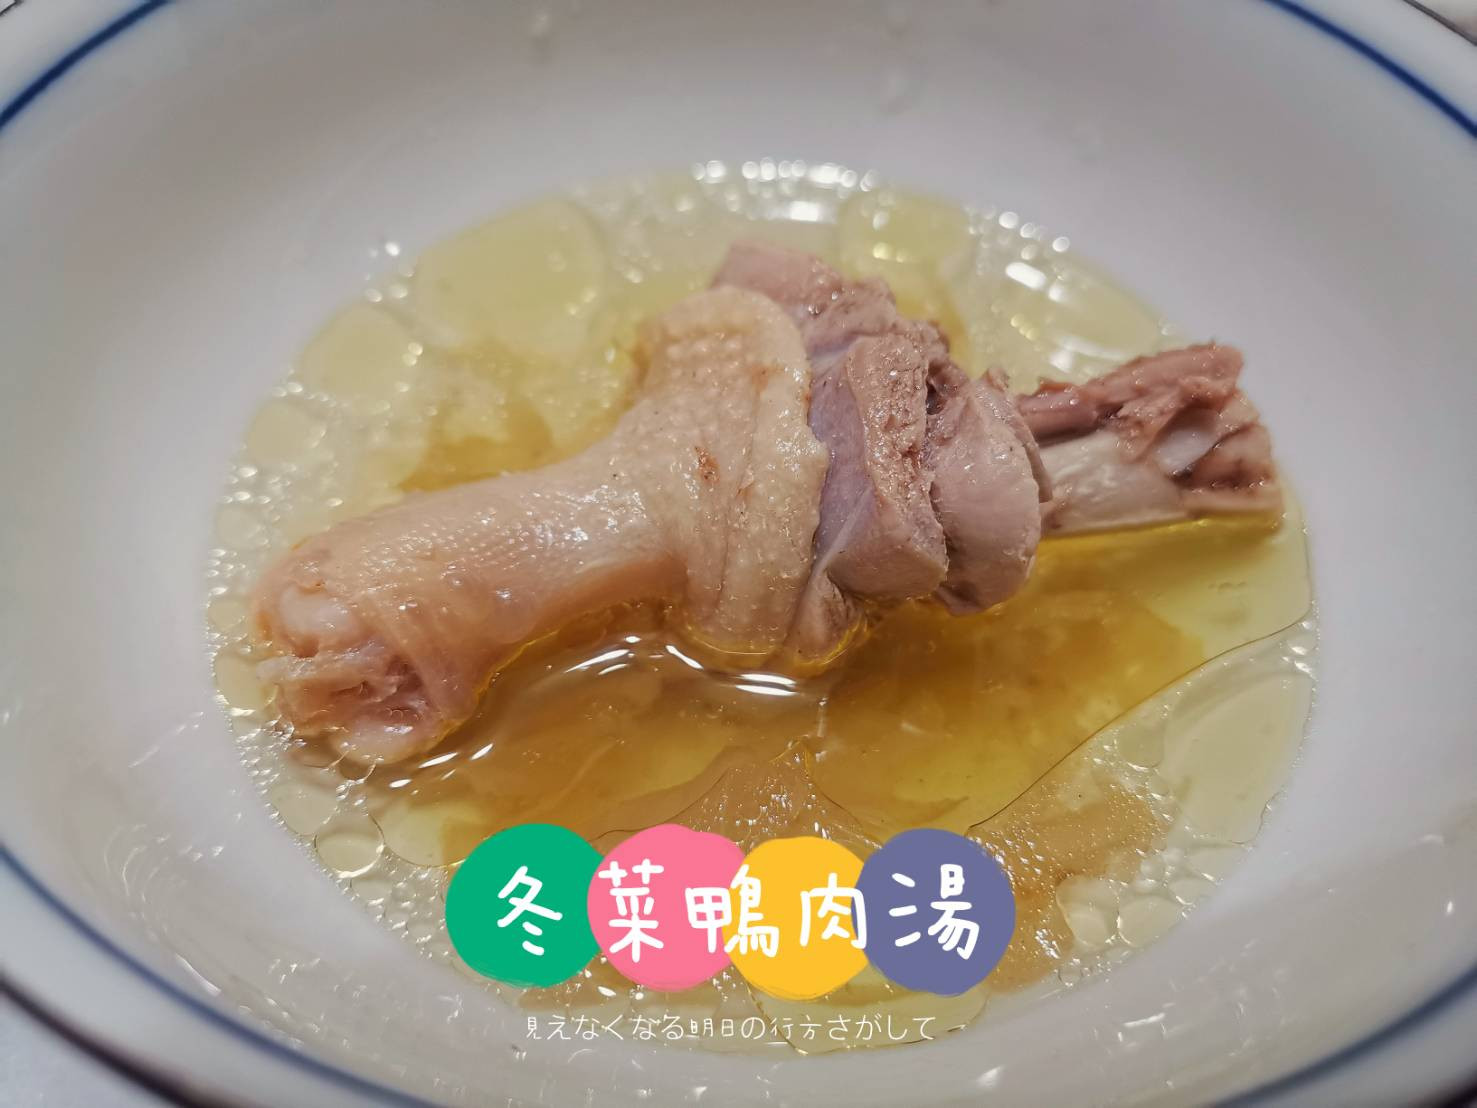 電鍋好料理 - 冬菜鴨肉湯